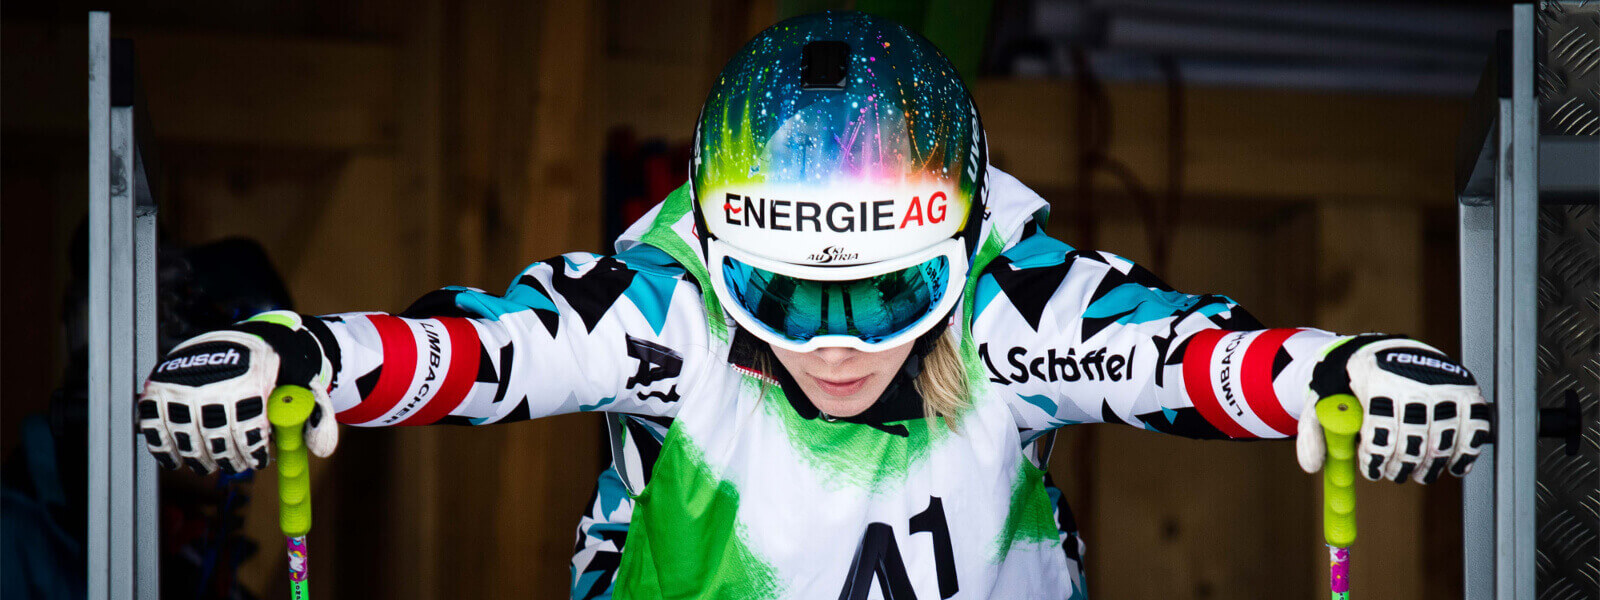 Die österreichische Skirennläuferin Andrea Limbacher im Starthaus beim Ski Cross blickt konzentriert